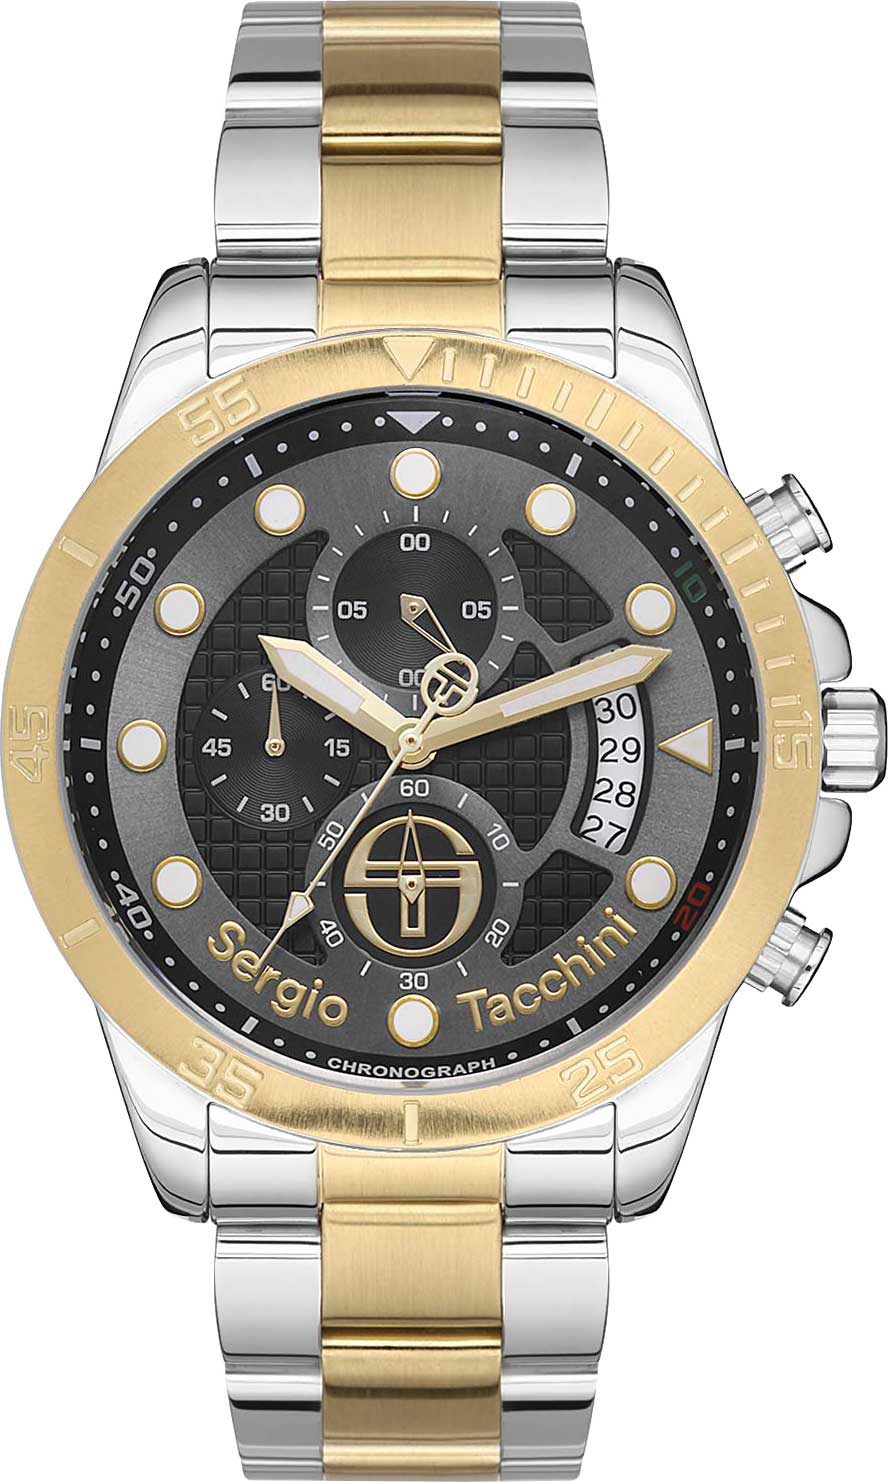 фото Наручные часы мужские sergio tacchini st.1.10202-3 серебристые/золотистые